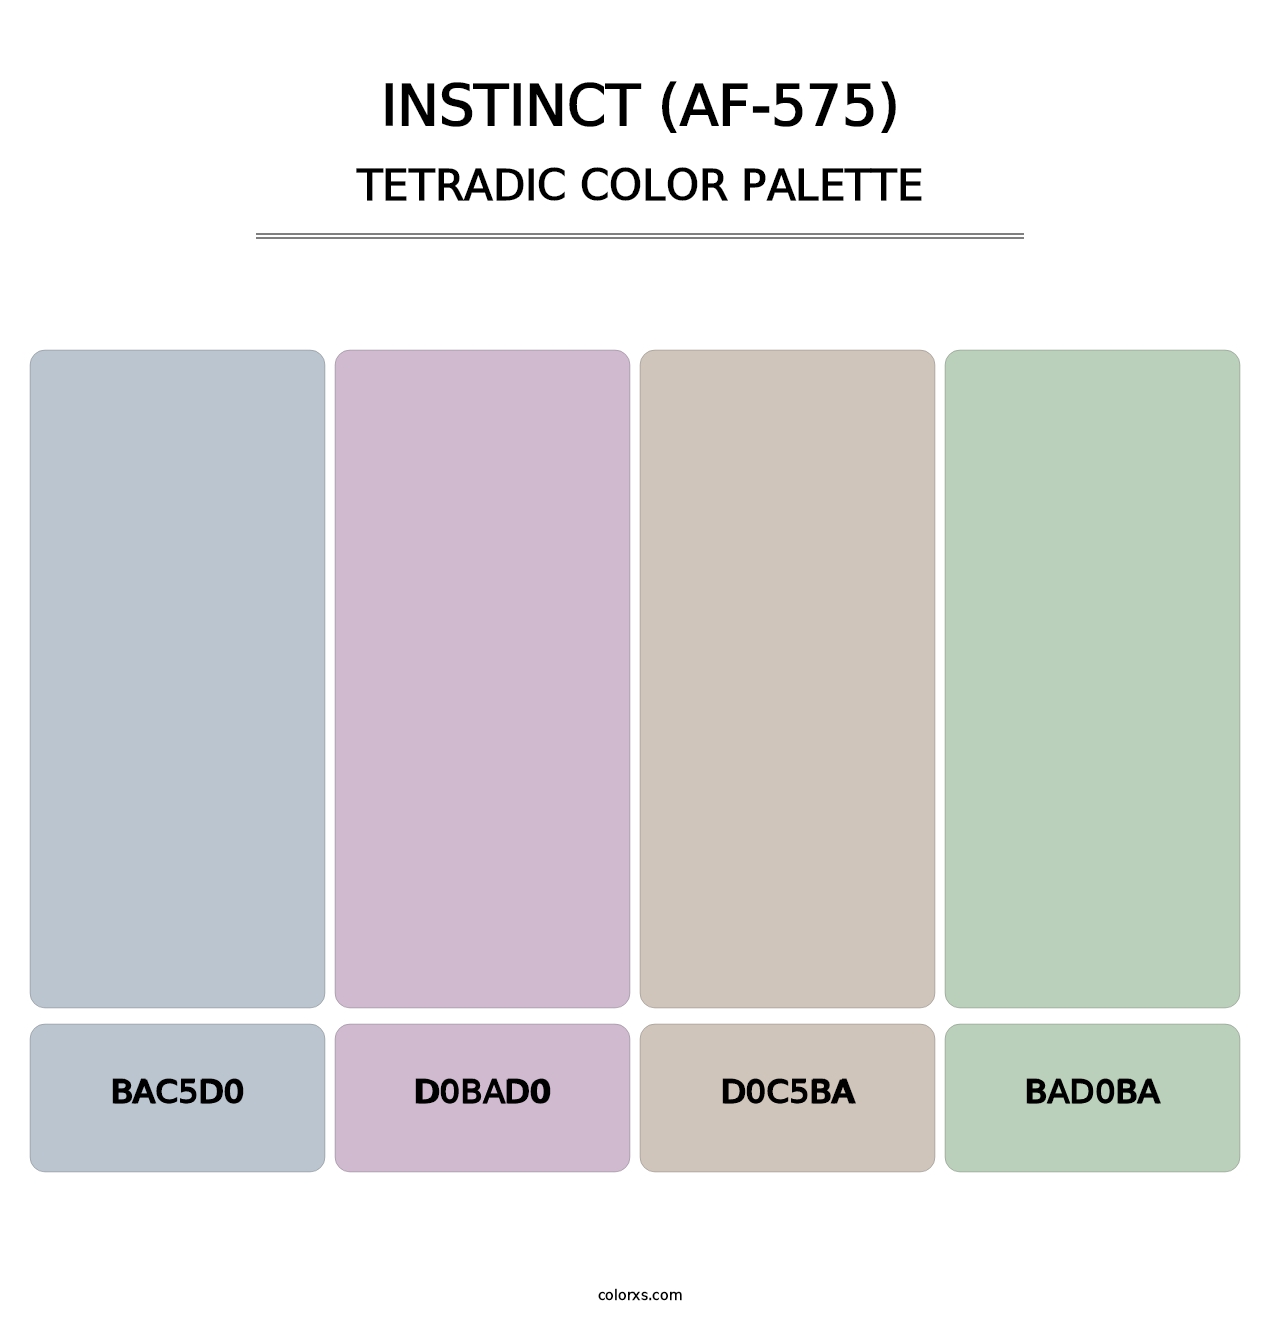 Instinct (AF-575) - Tetradic Color Palette